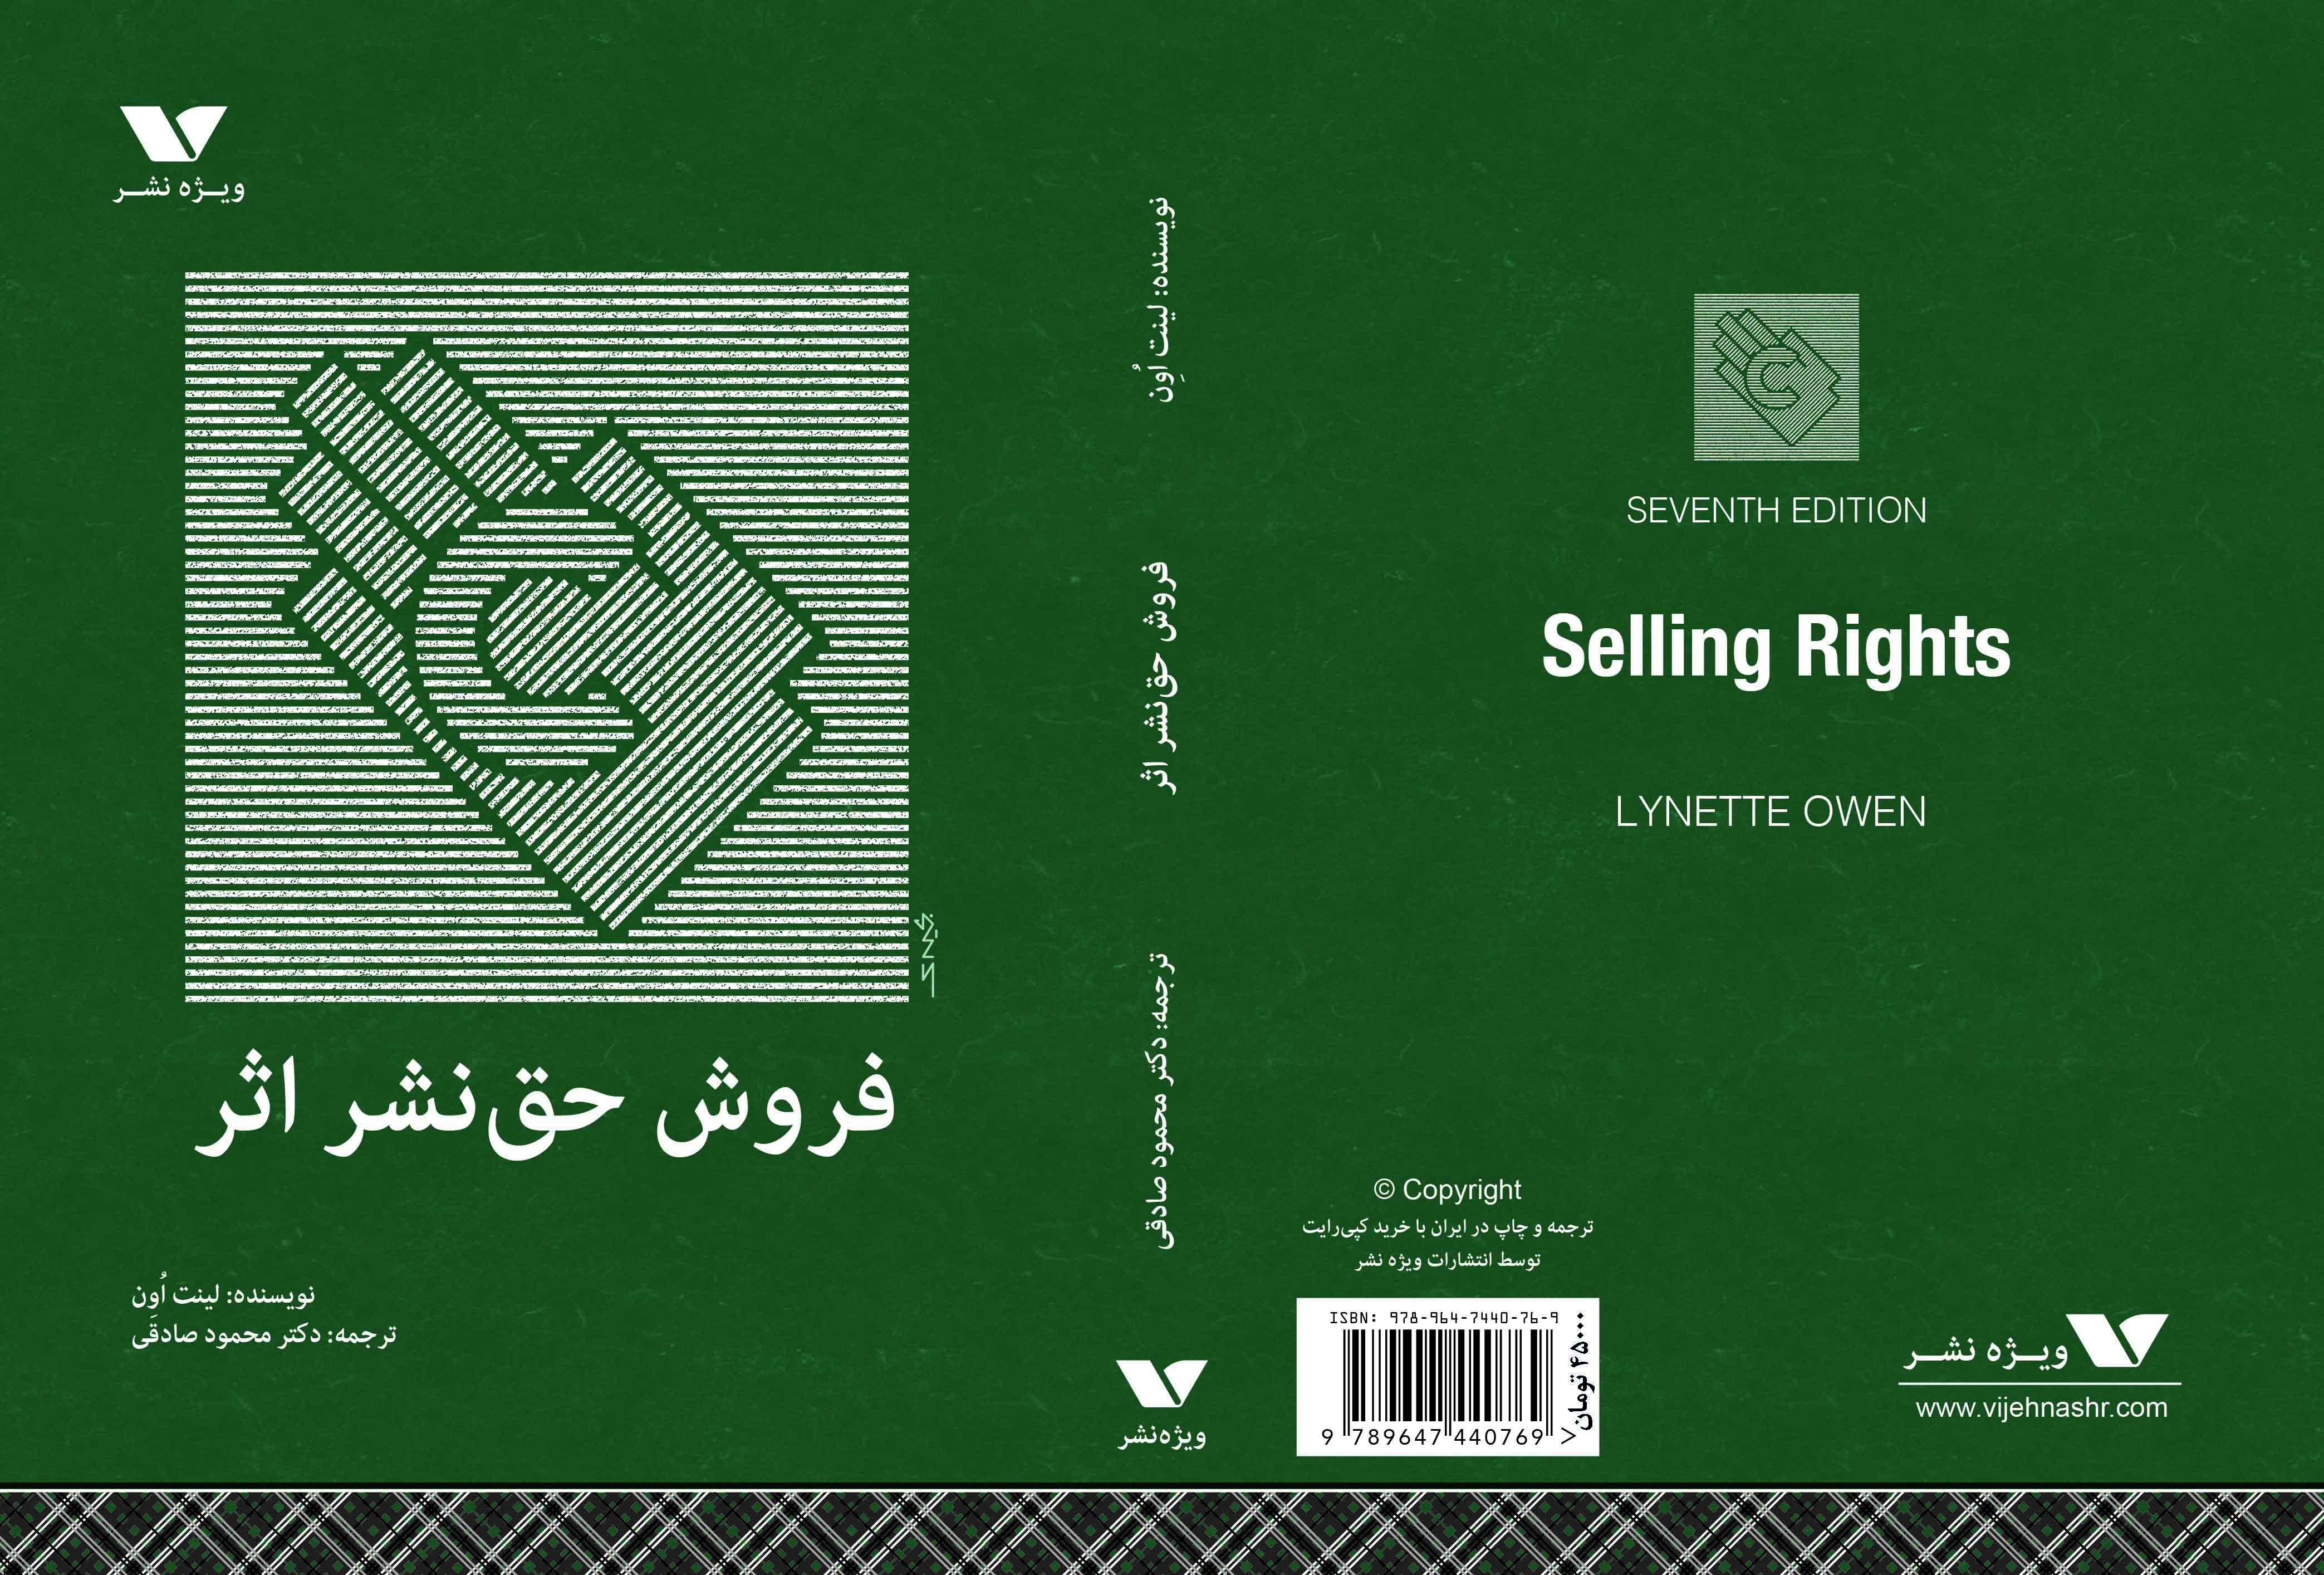 تشریح مبانی فروش حق نشر اثر در قالب یک کتاب